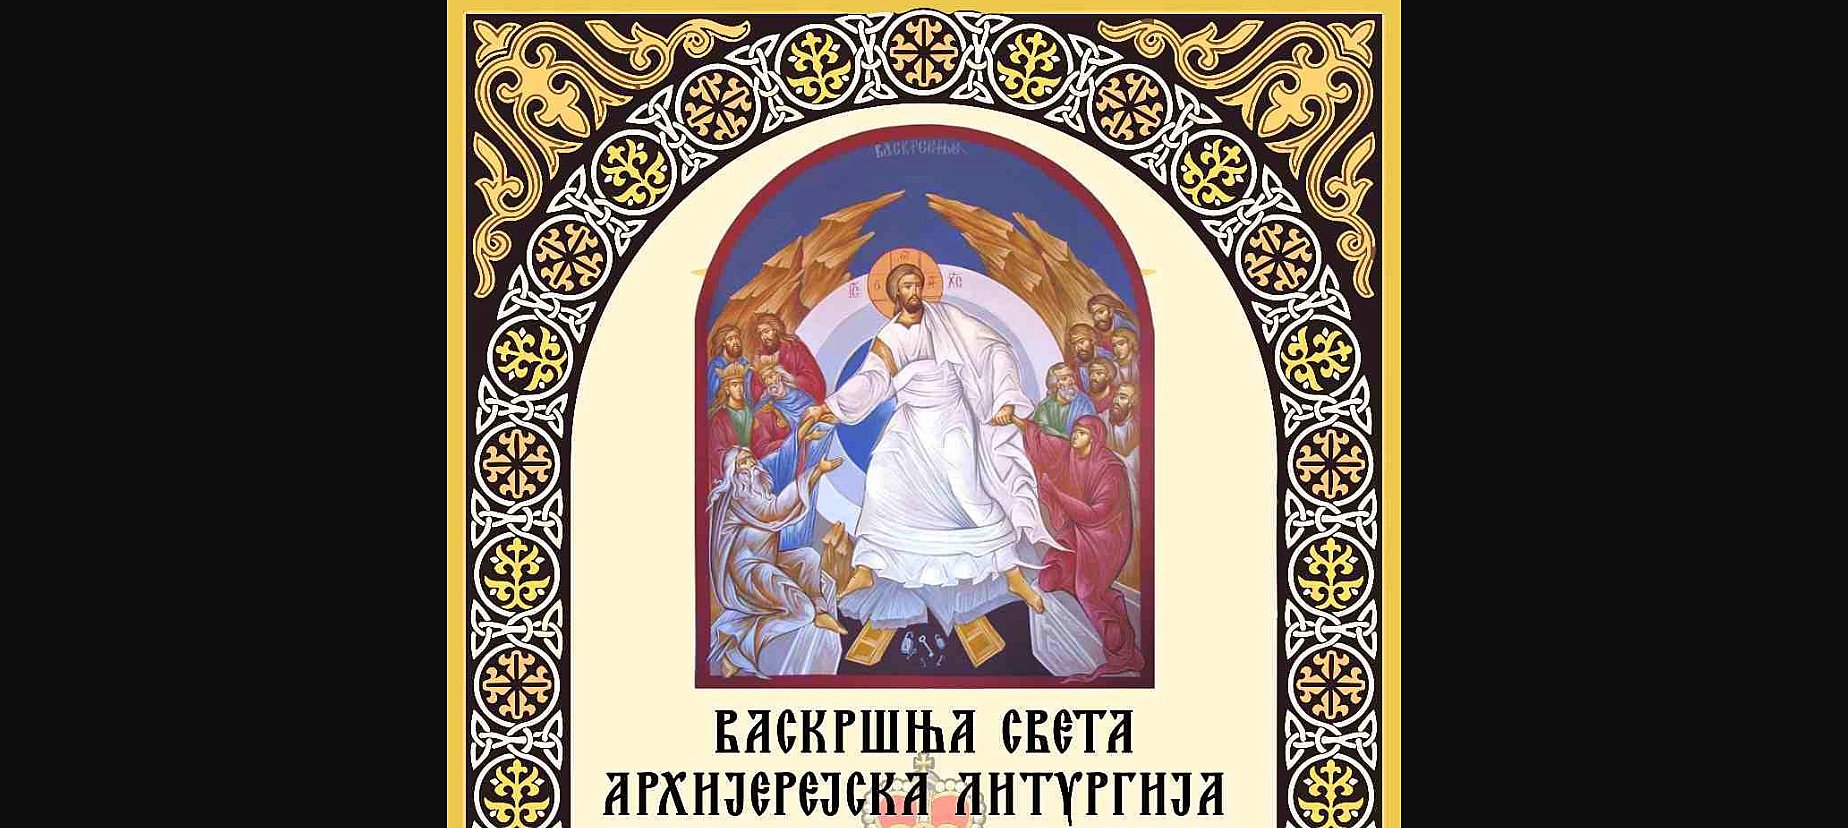 Vaskršnja arhijerejska liturgija Crnogorske pravoslavne crkve